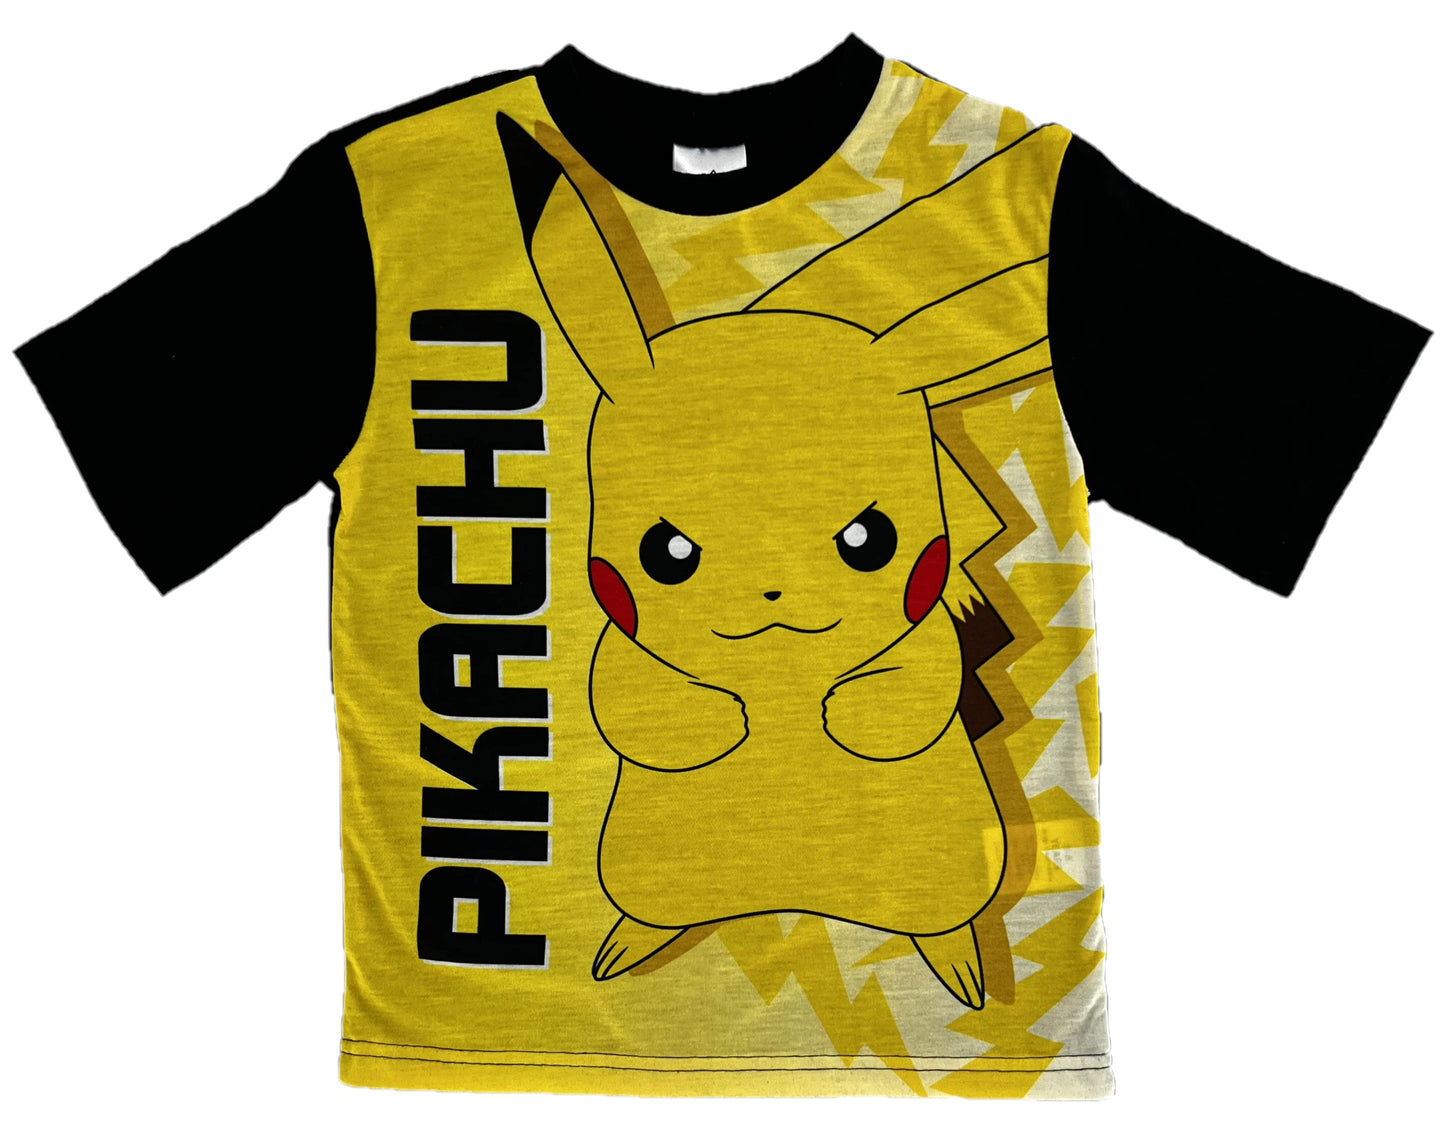 Pokémon Pikachu Kids Shortie Pyjamas Boys or Girls 5-12 Years,